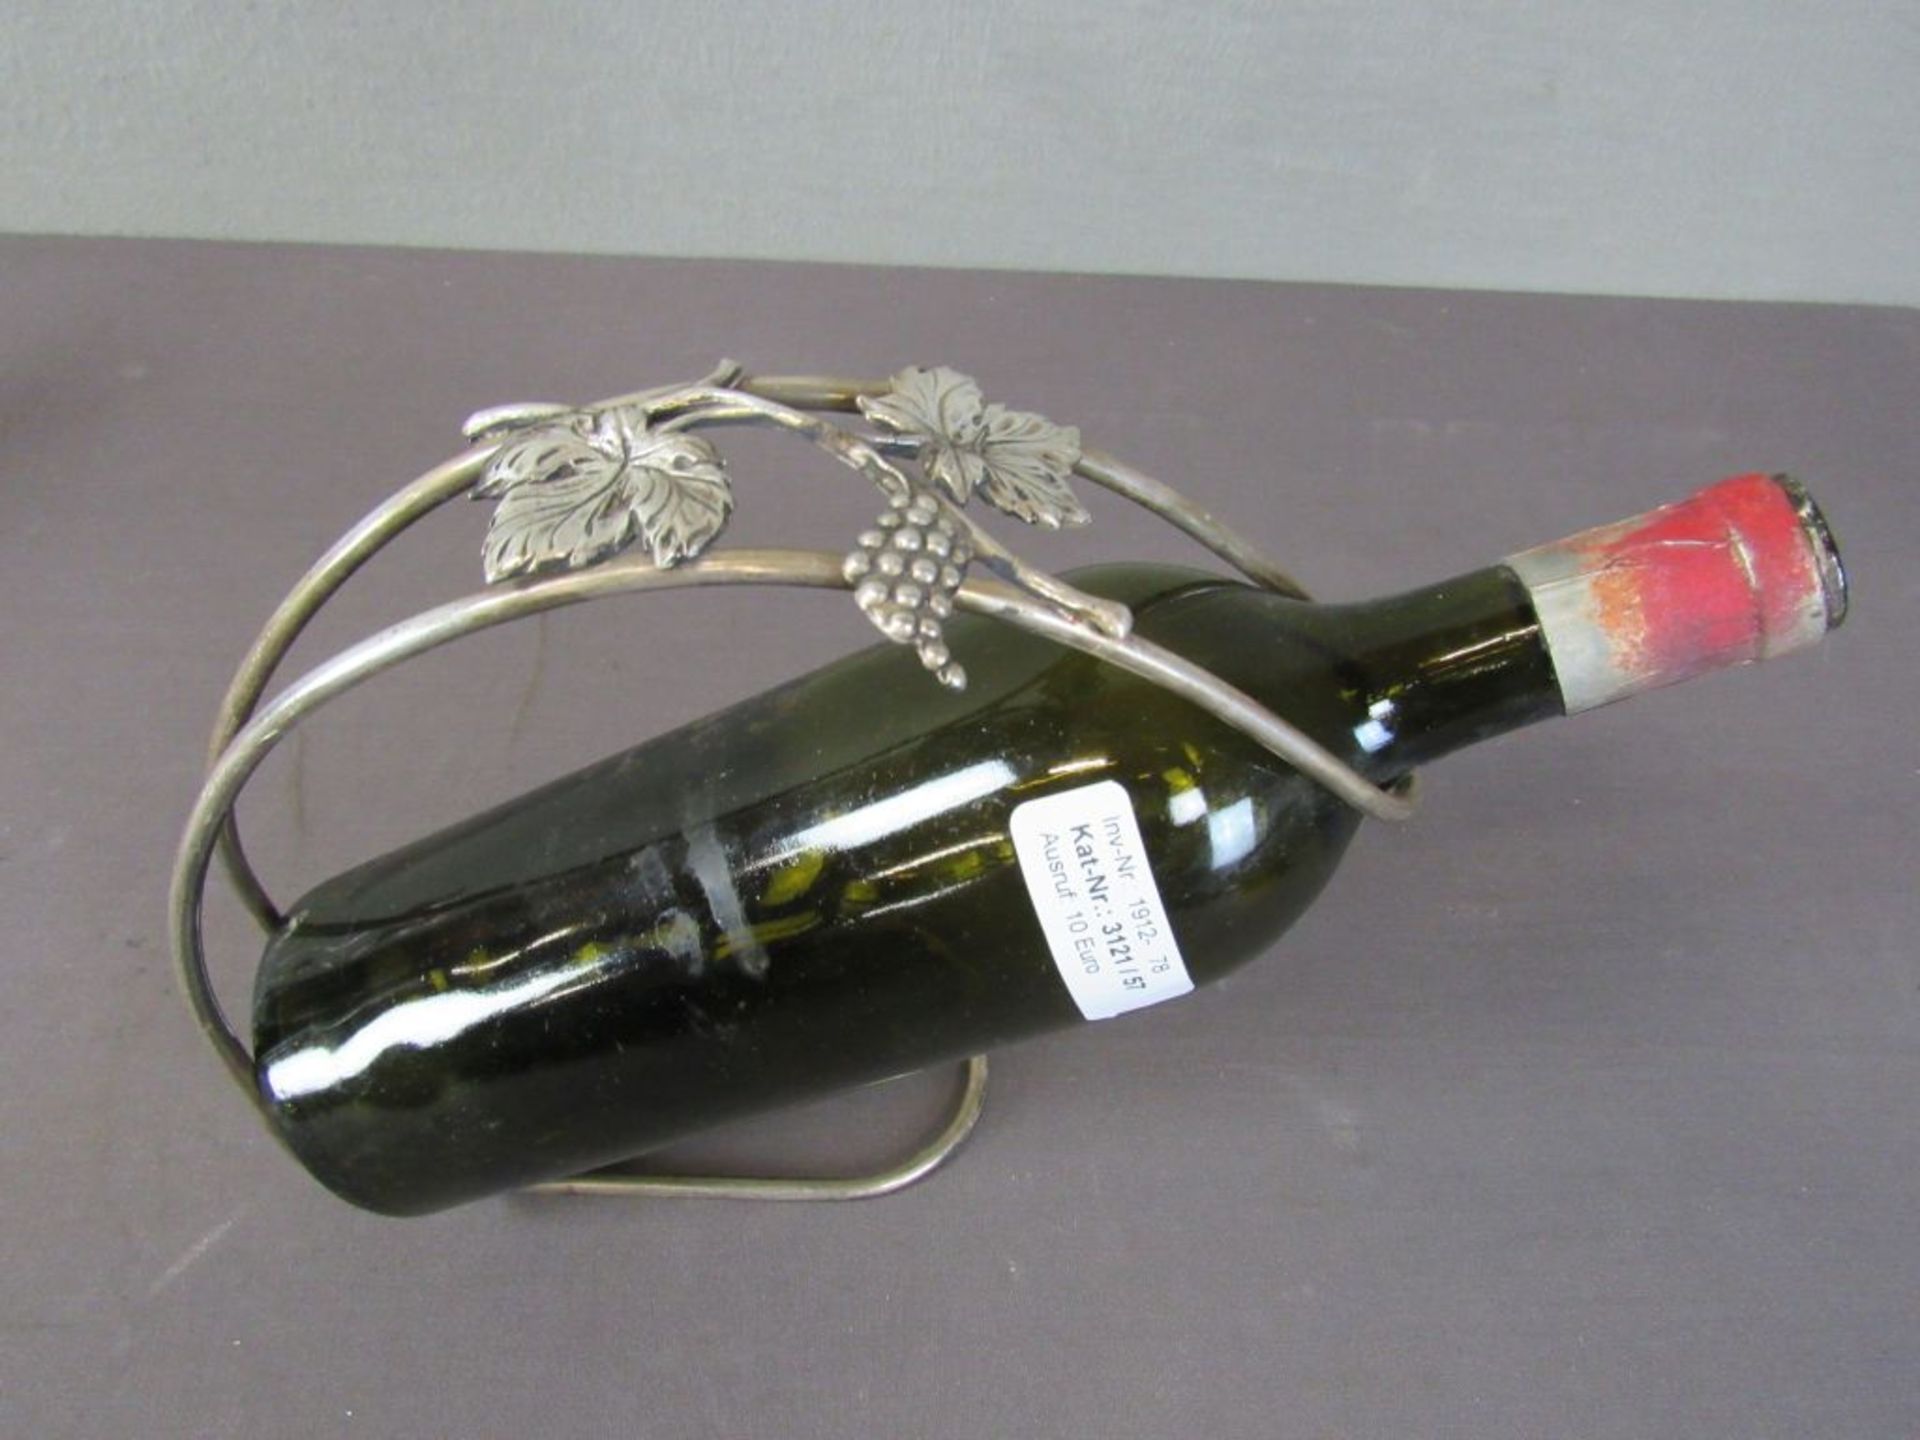 Ständer für Weinflaschen, versilbert - Bild 2 aus 4